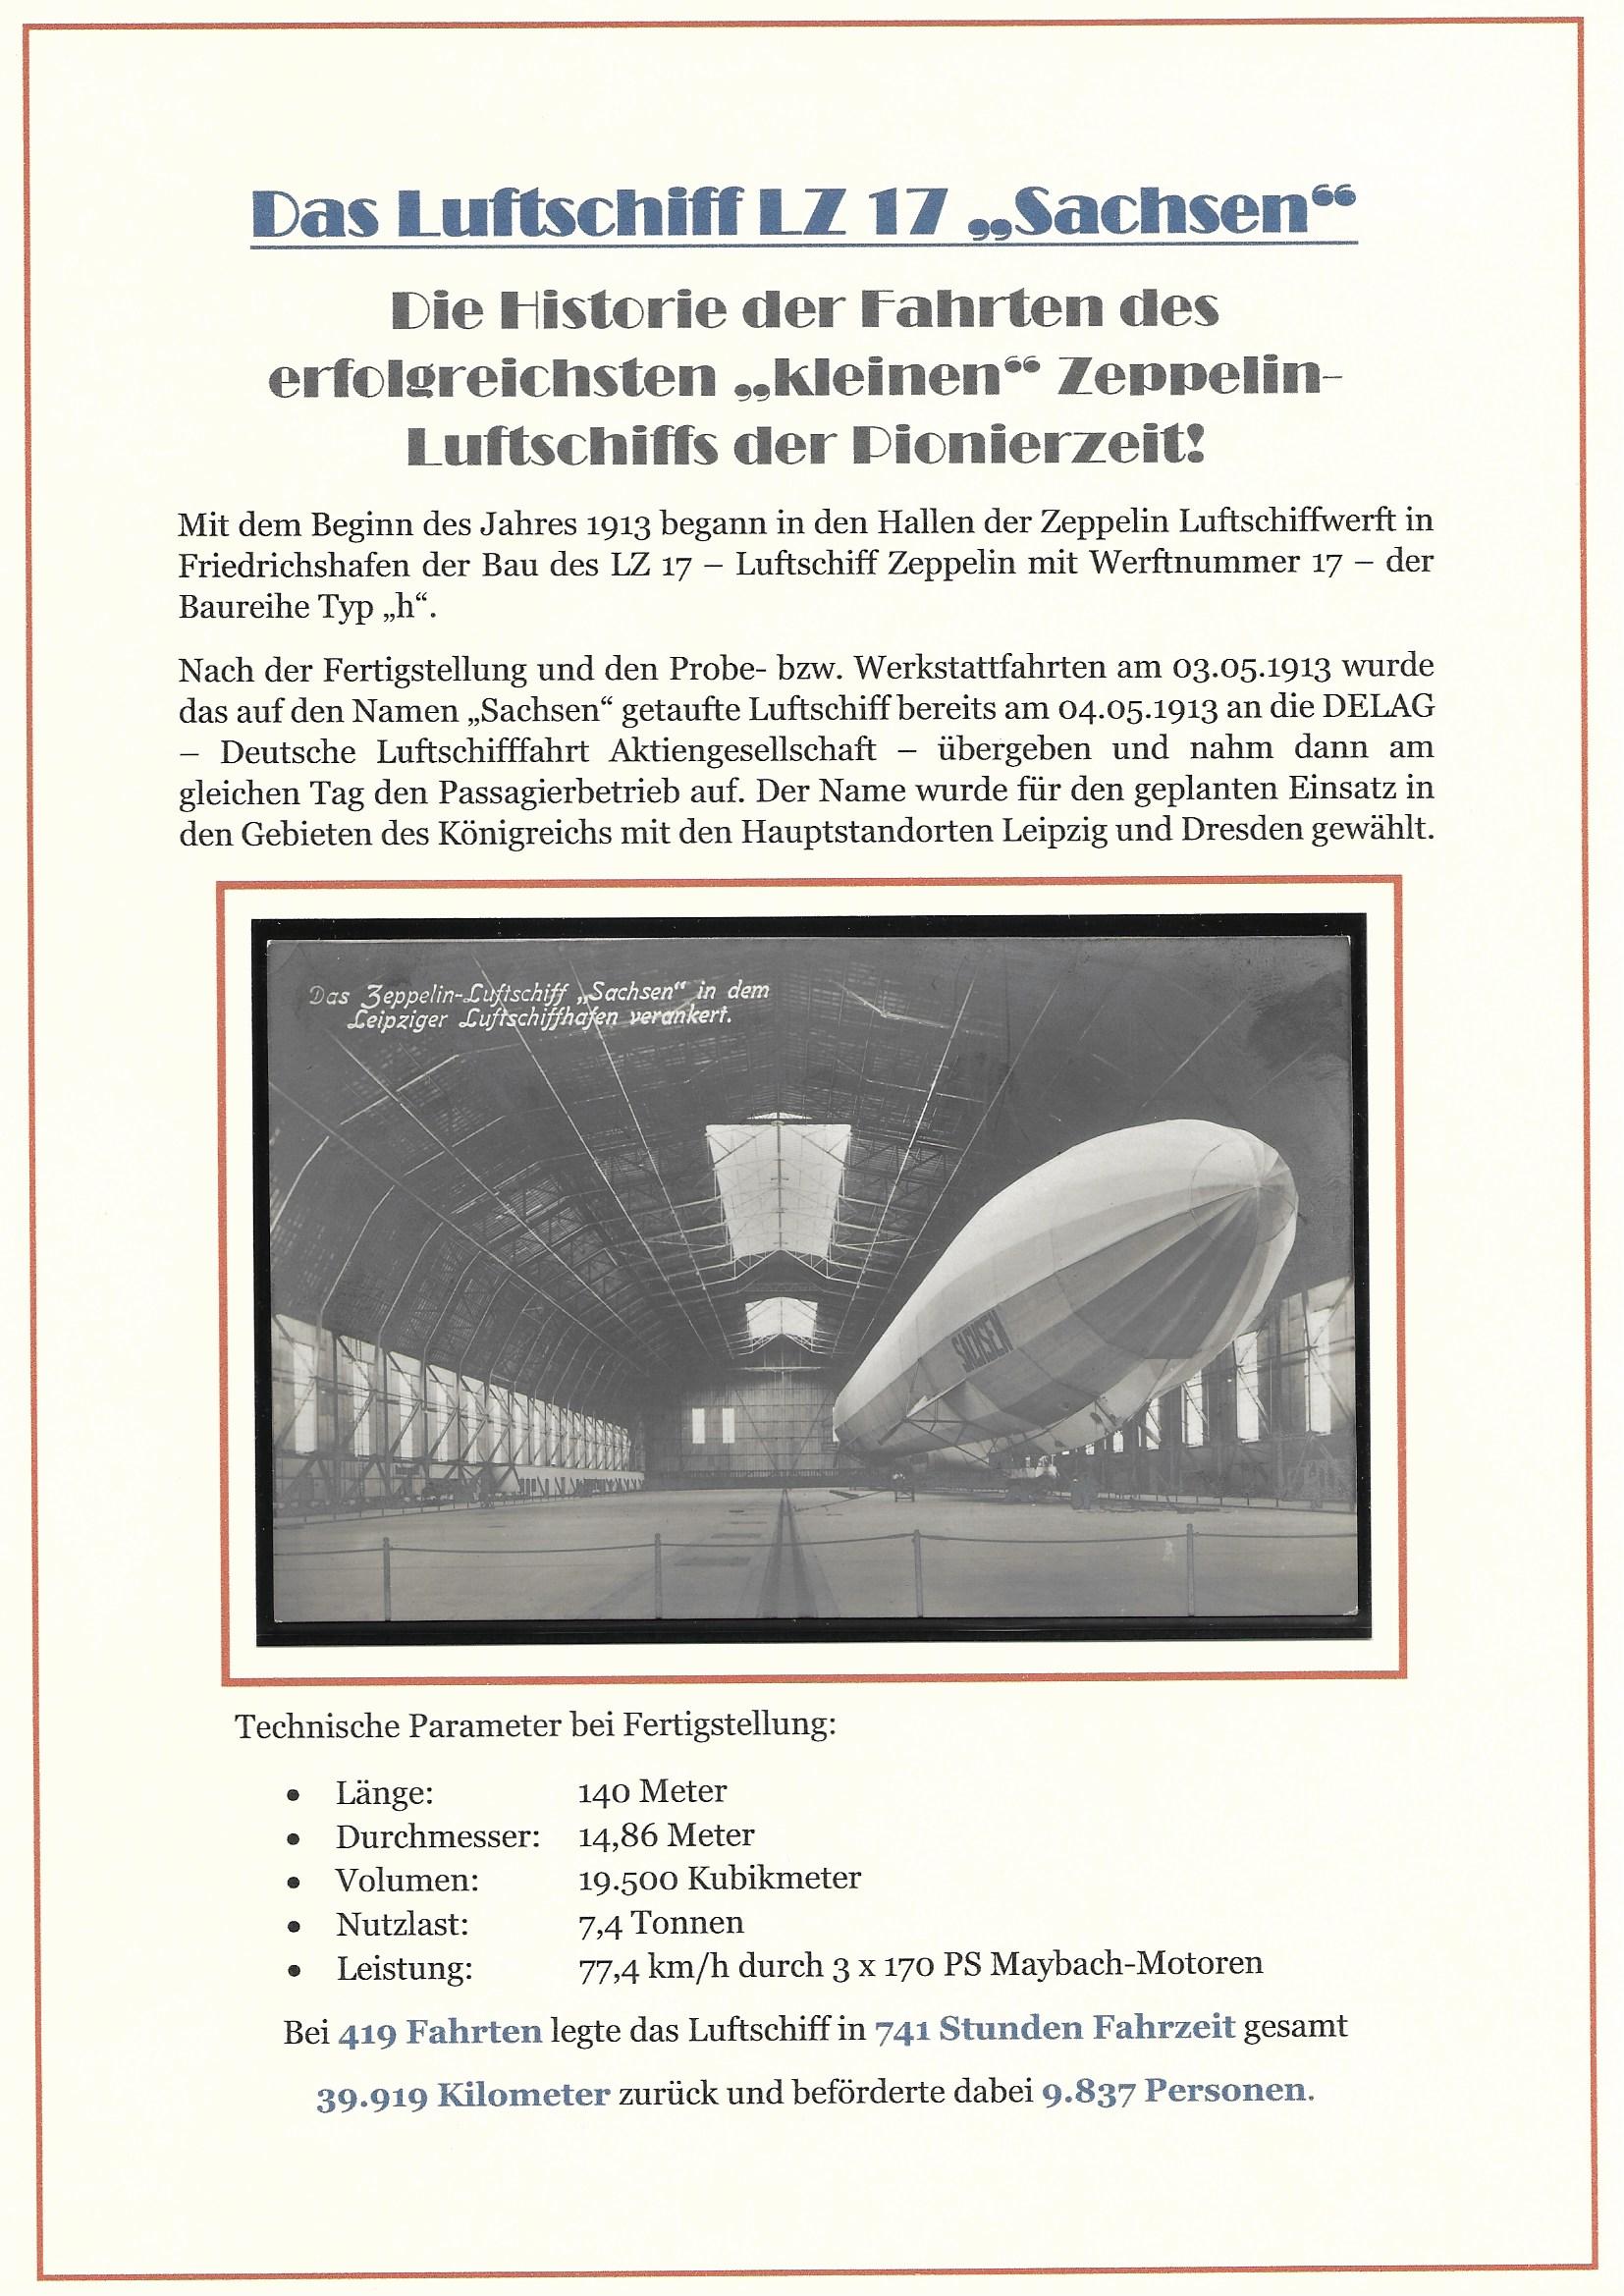 Titelblatt meines Exponats zum Luftschiff LZ 17 "Sachsen"